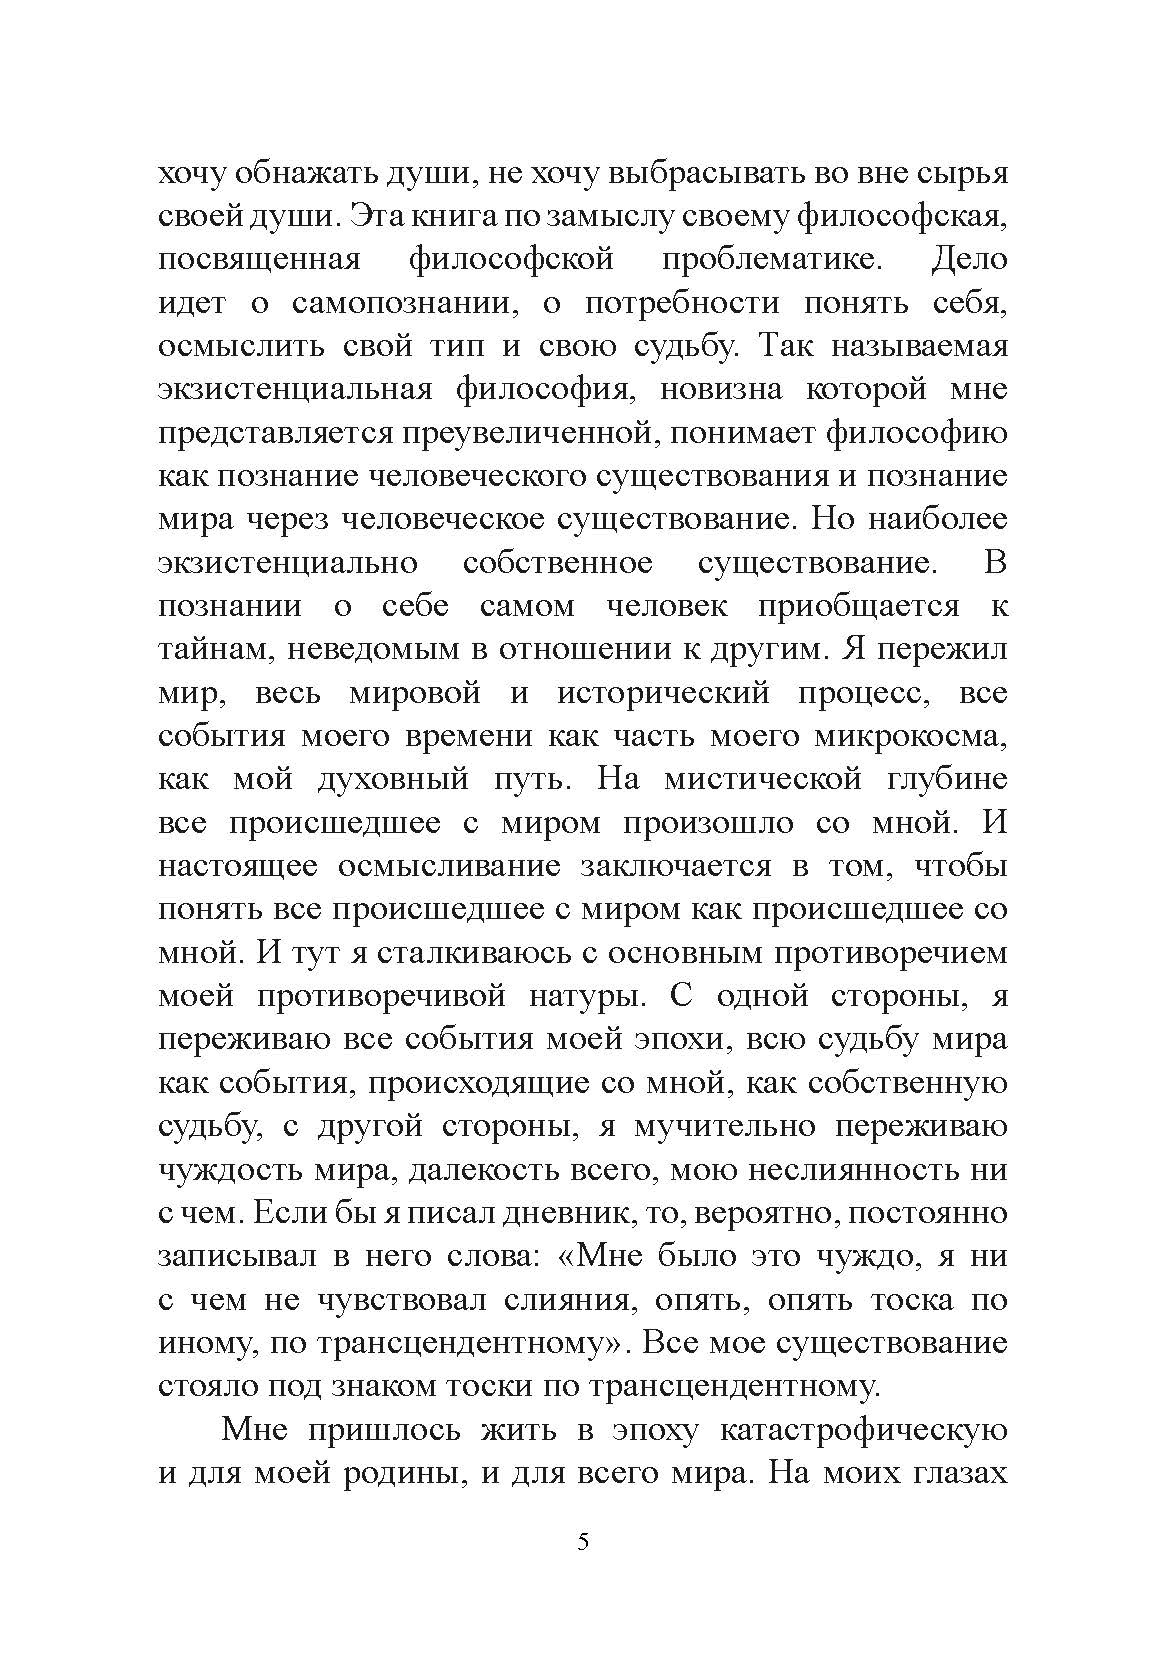 Самопознание. Николай Бердяев.. Автор — Николай Бердяев.. 